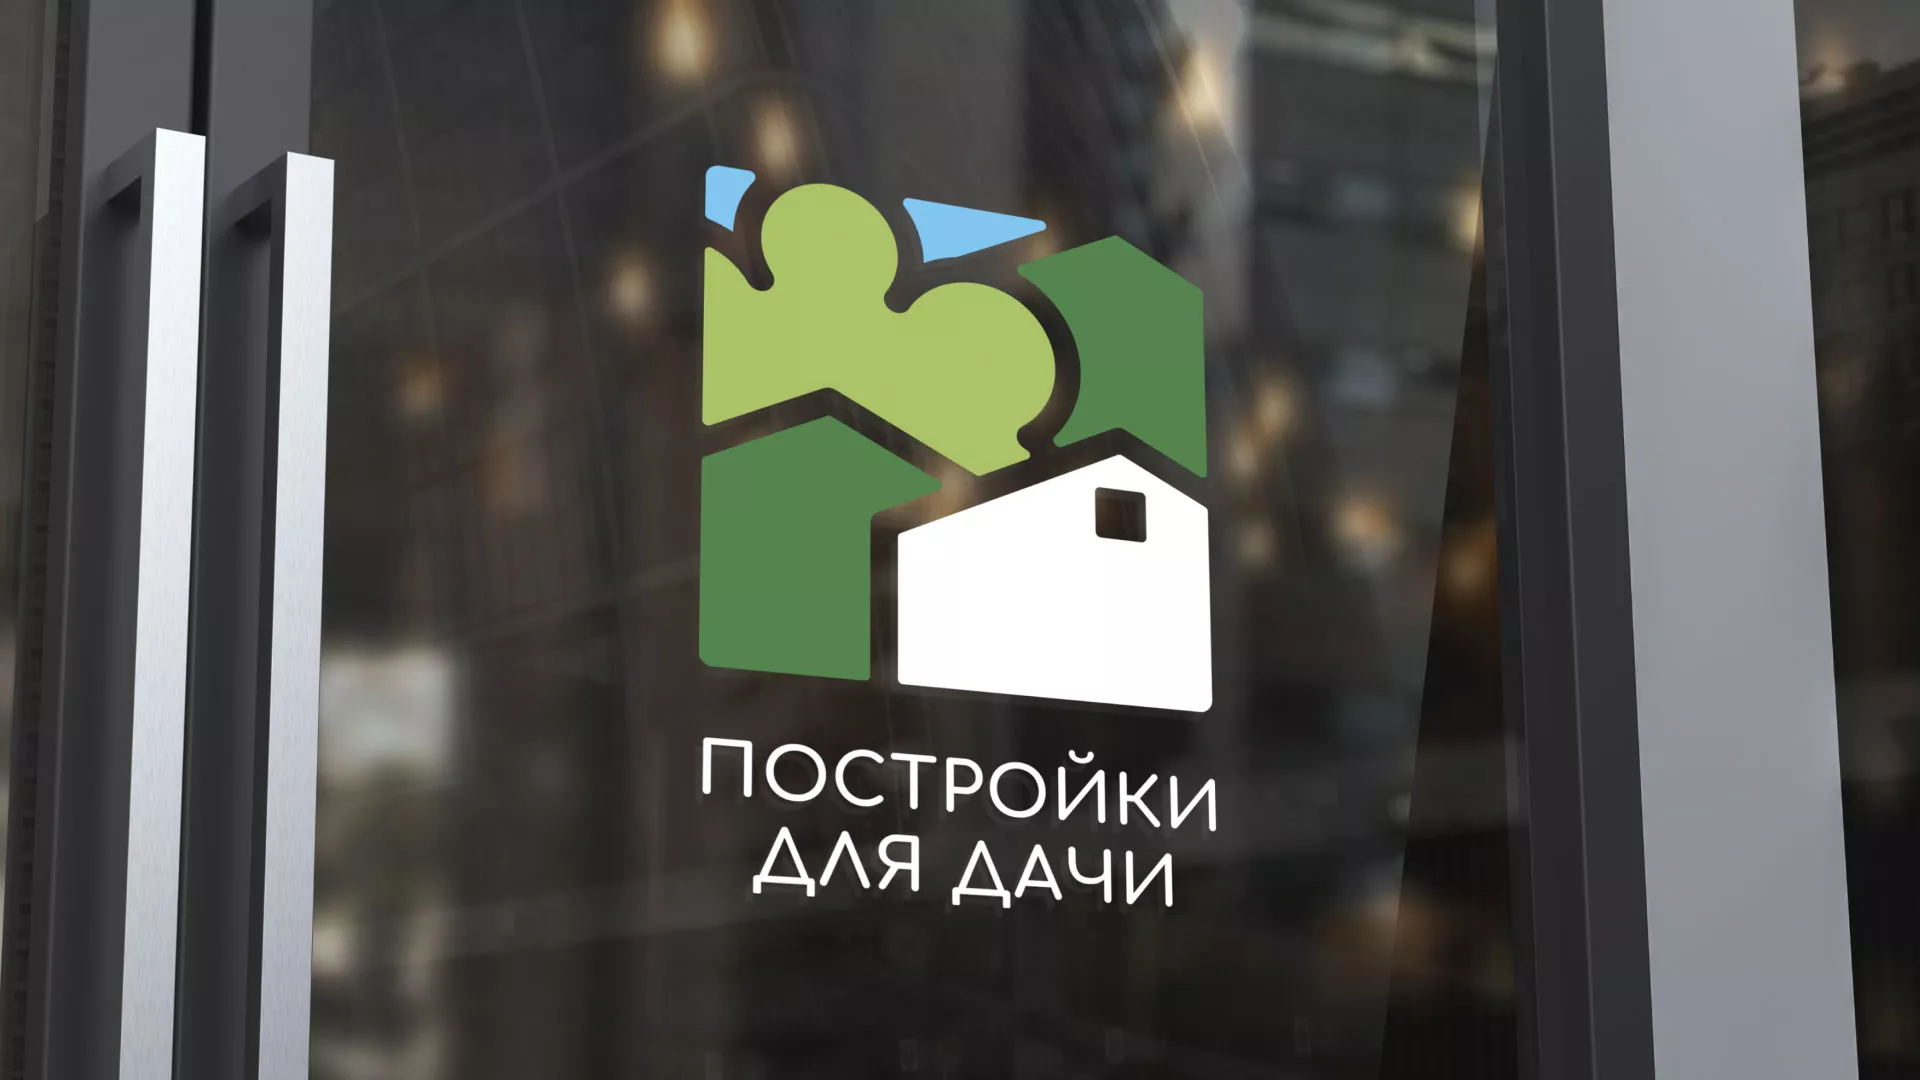 Разработка логотипа в Гремячинске для компании «Постройки для дачи»